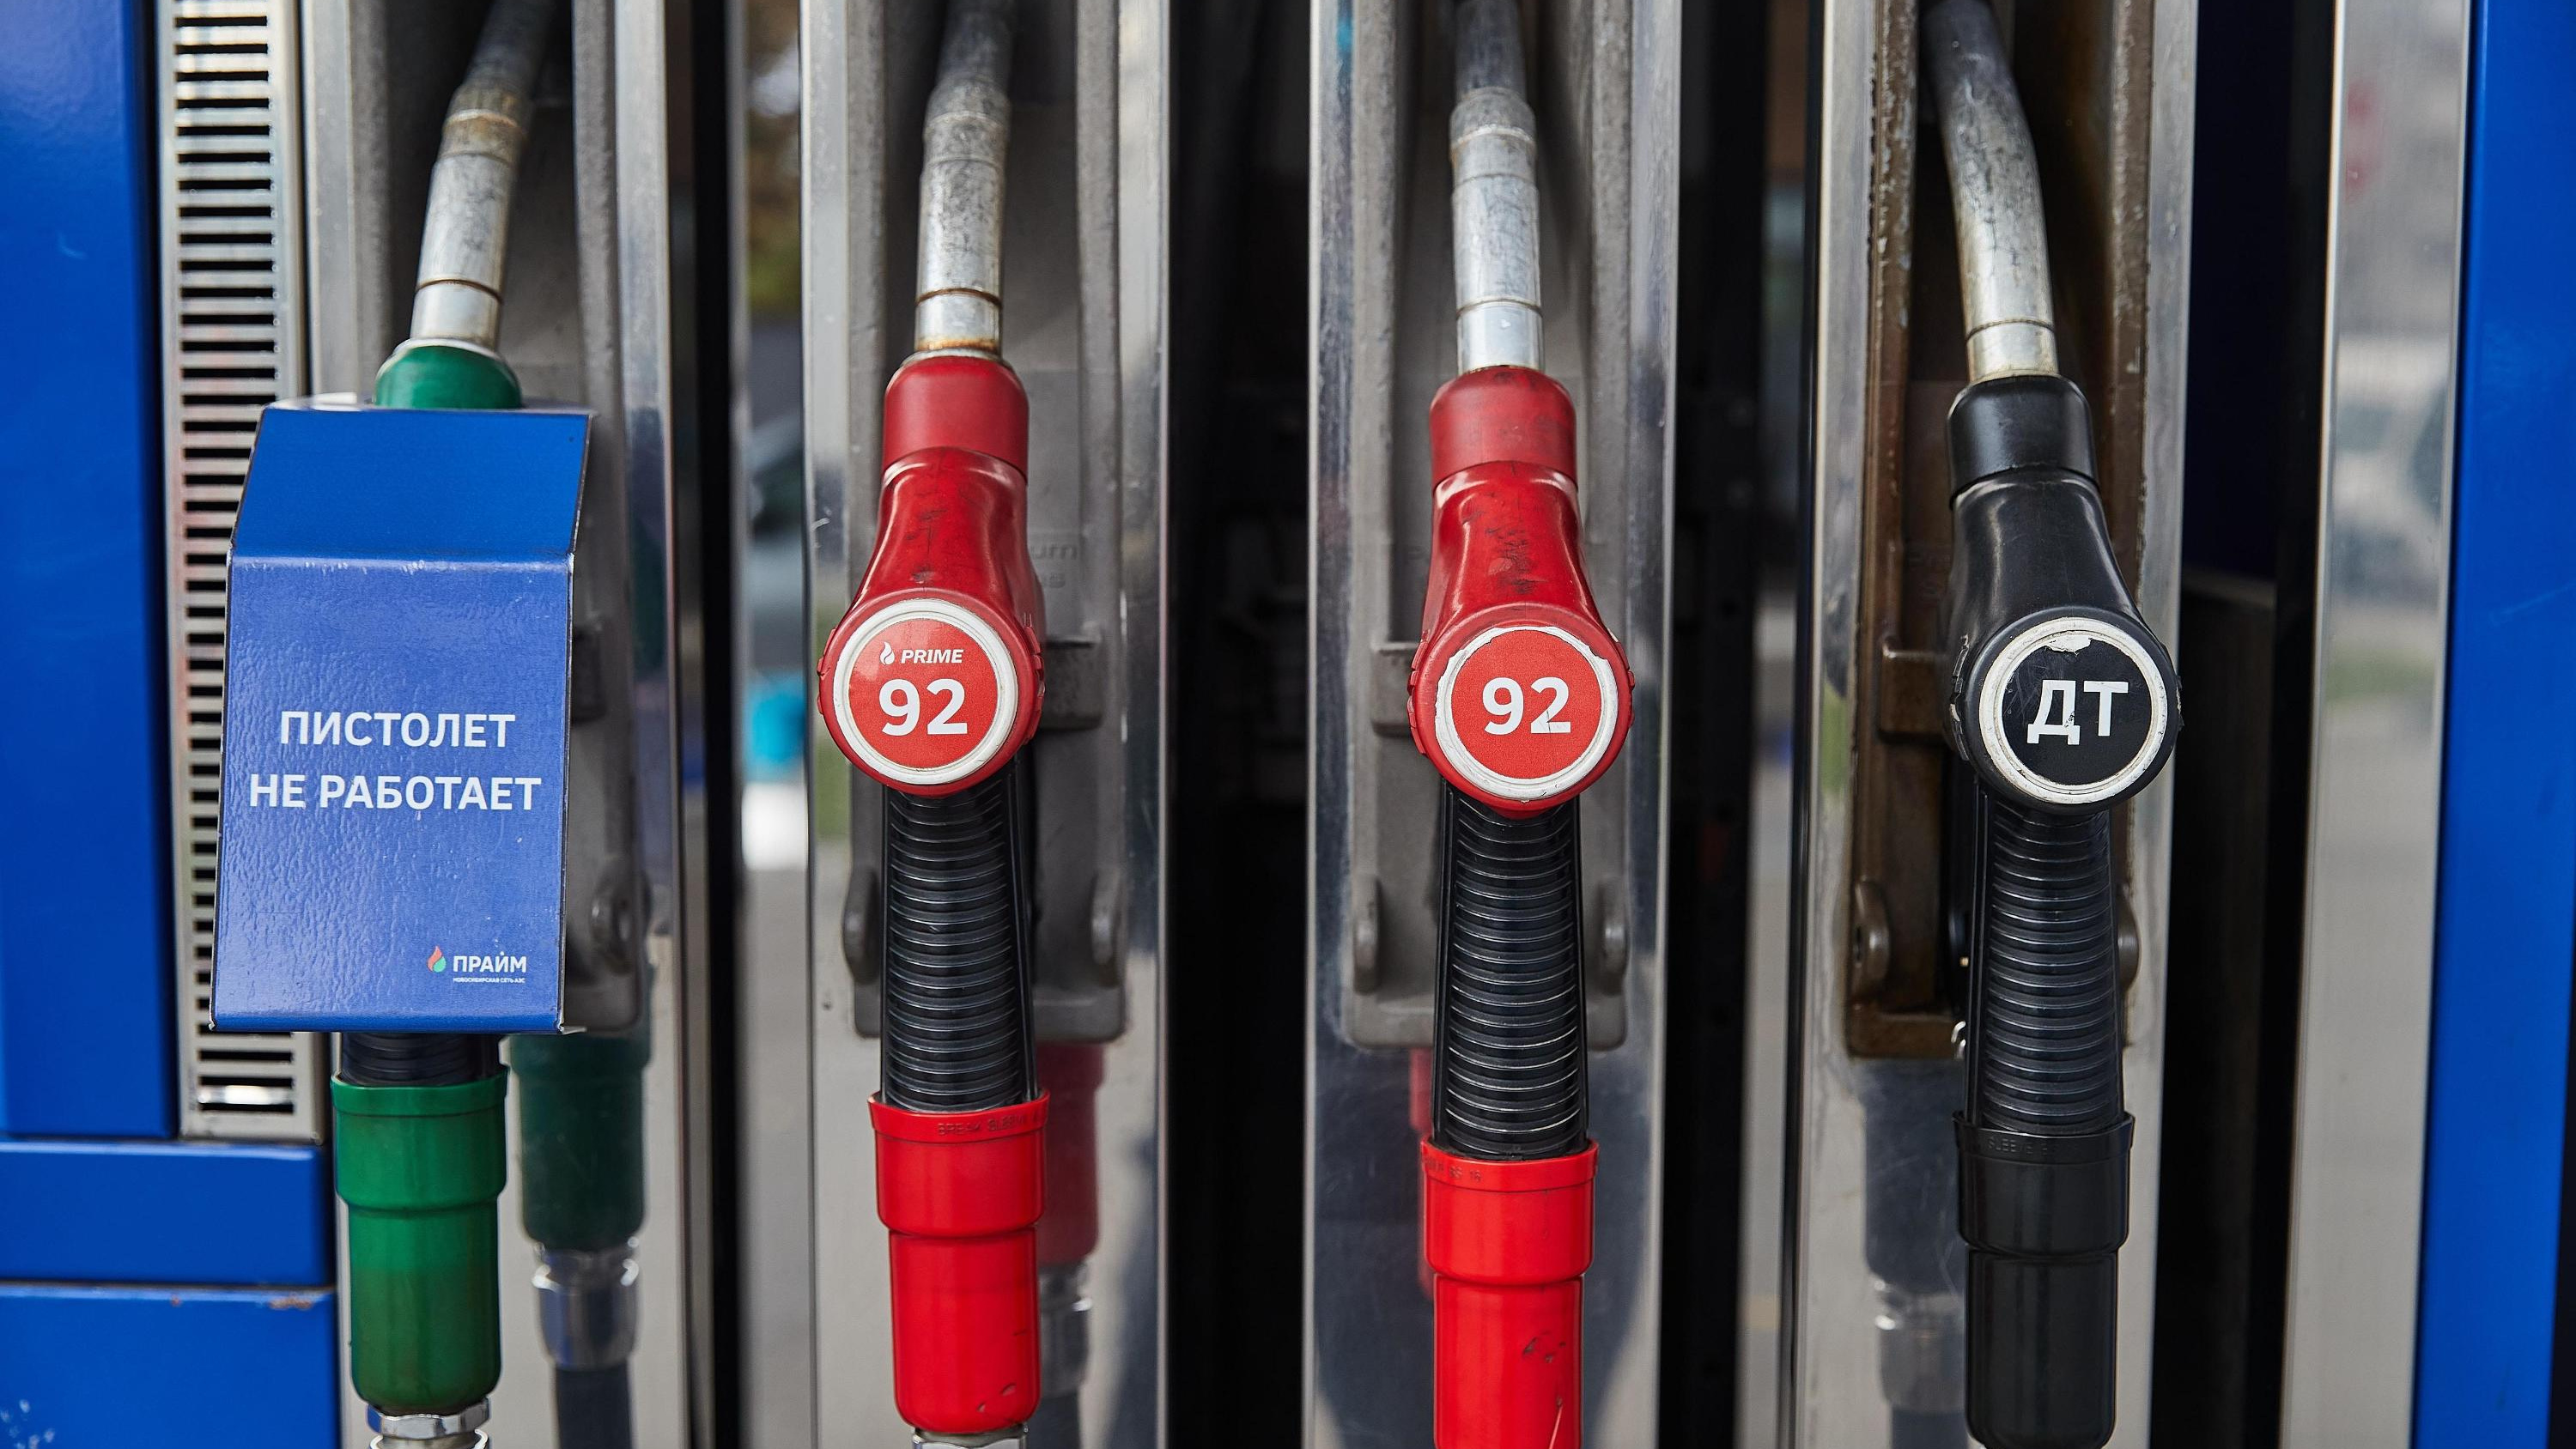 БПЛА vs нефть. Стоит ли ждать дефицита топлива и что будет с ценами после ЧП на «Лукойле» под Нижним — мнение экспертов